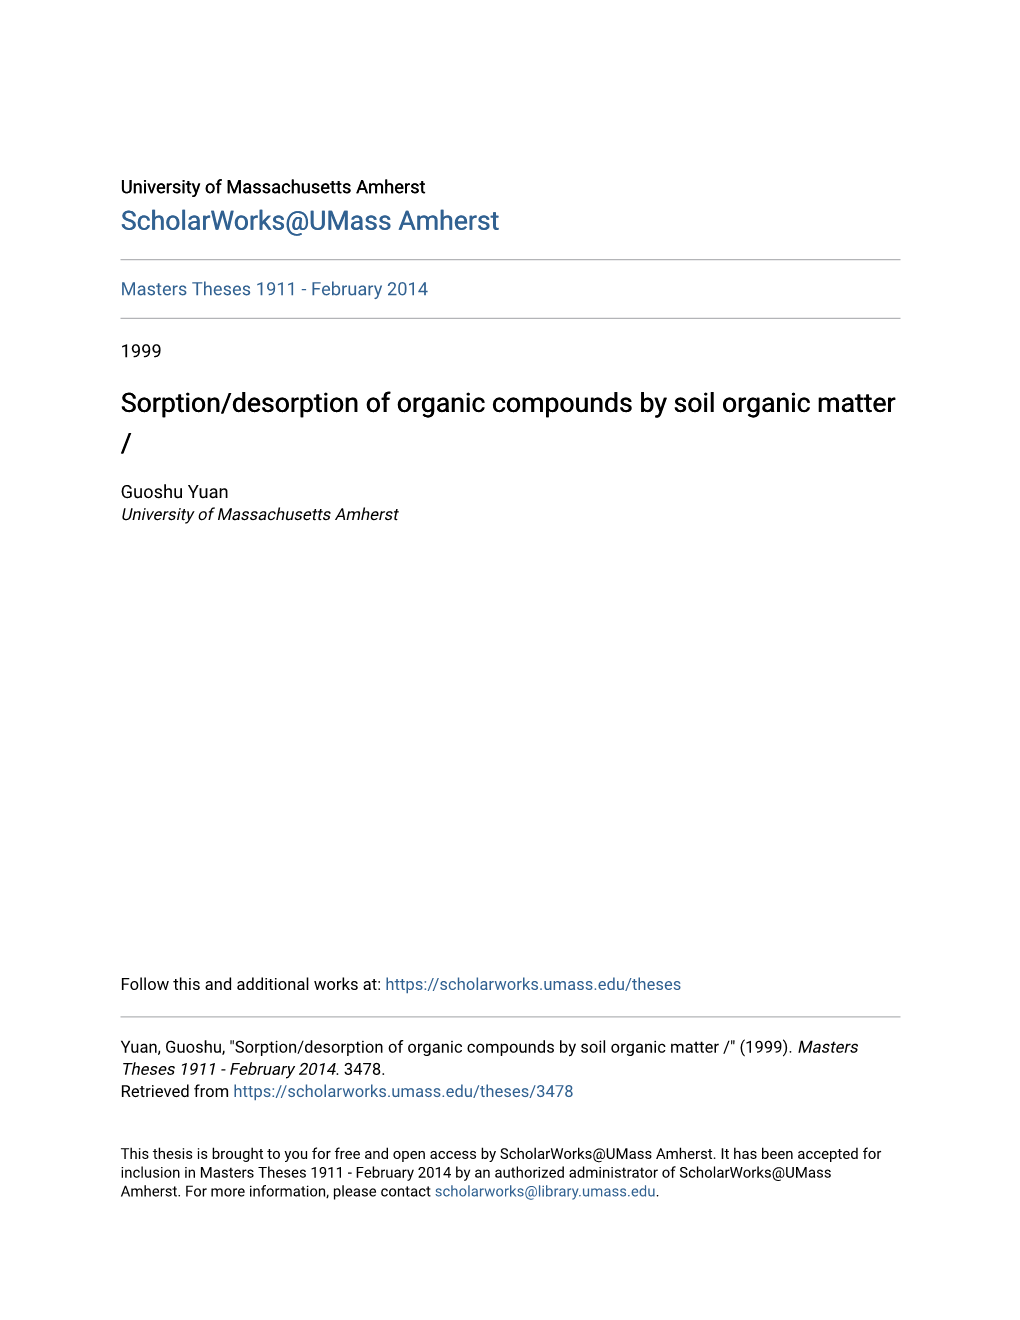 Sorption/Desorption of Organic Compounds by Soil Organic Matter